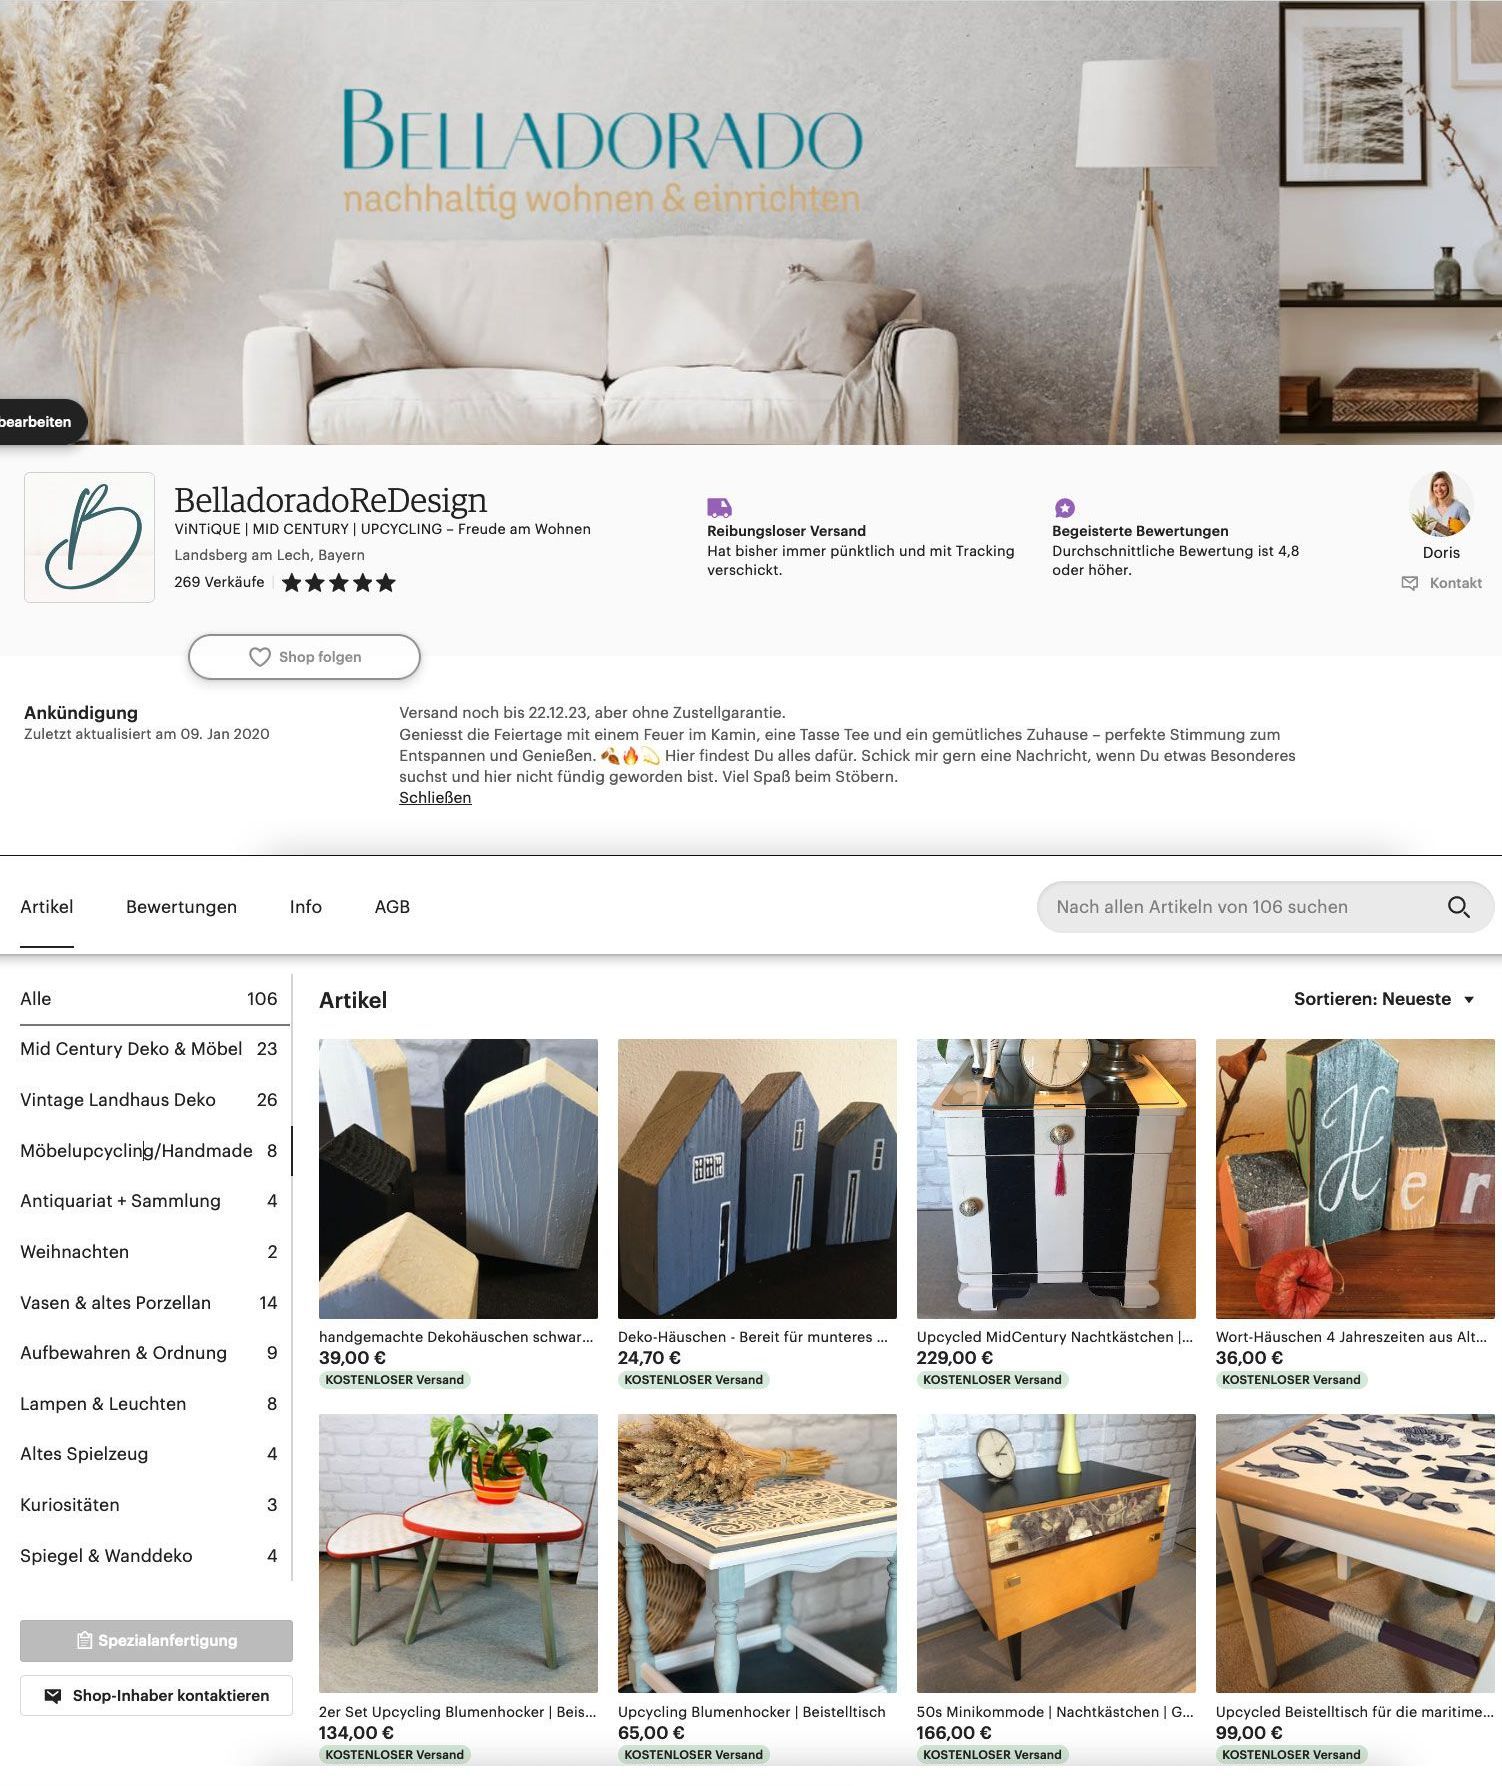 Startseite des Online-Shops